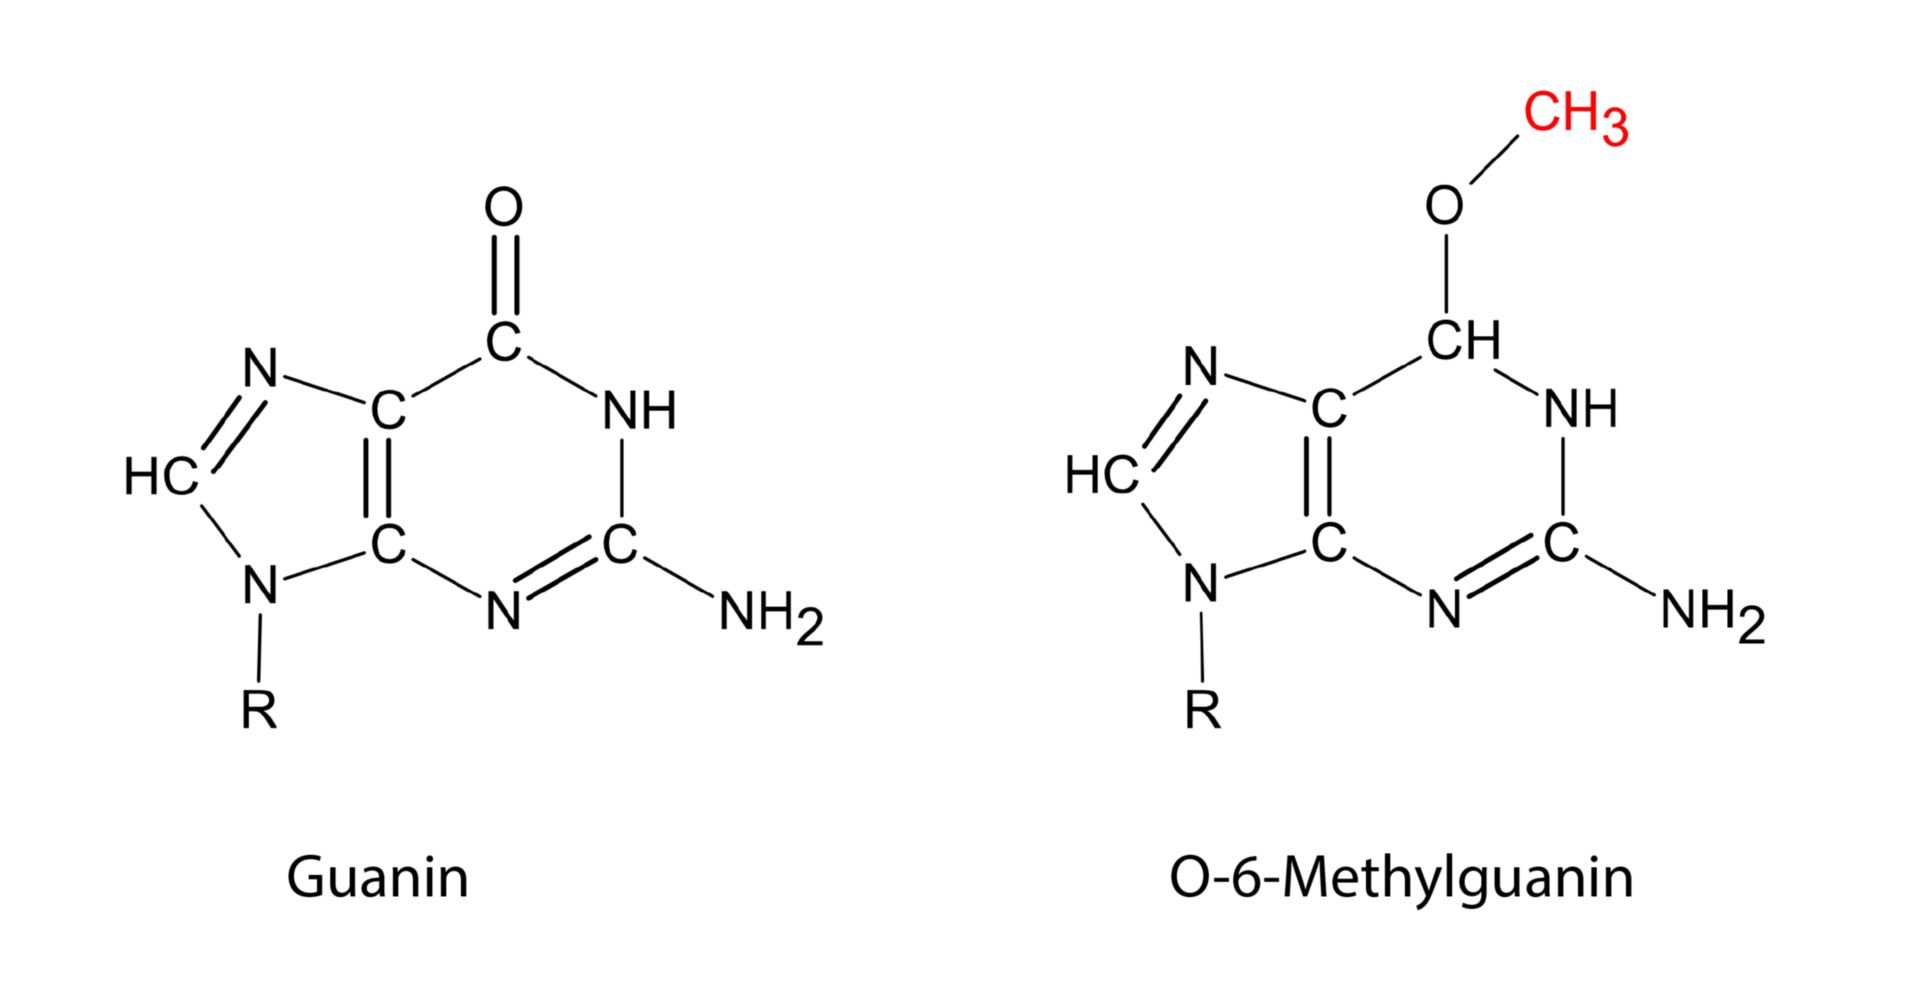 O-6-Methylguanin